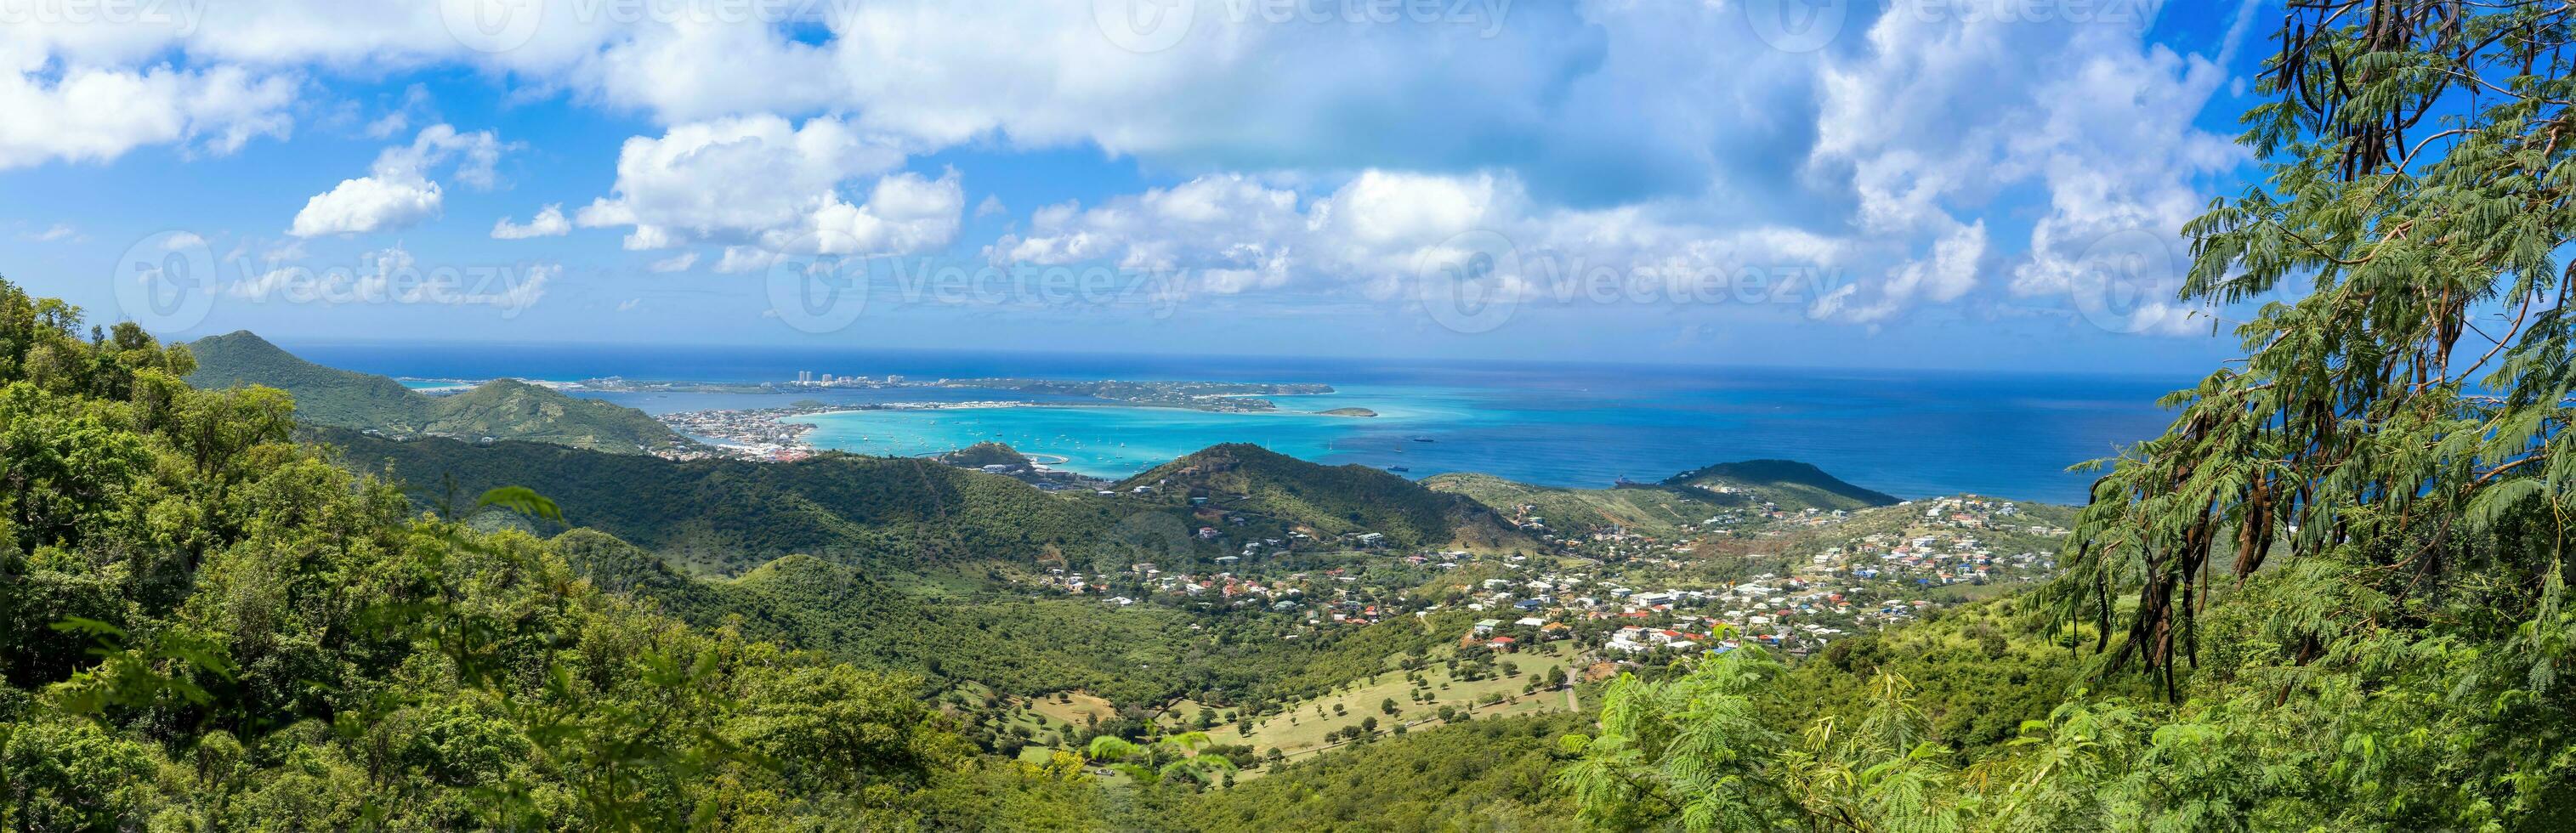 caraibico crociera vacanza, panoramico orizzonte di santo martin isola a partire dal pic paradis attenzione foto